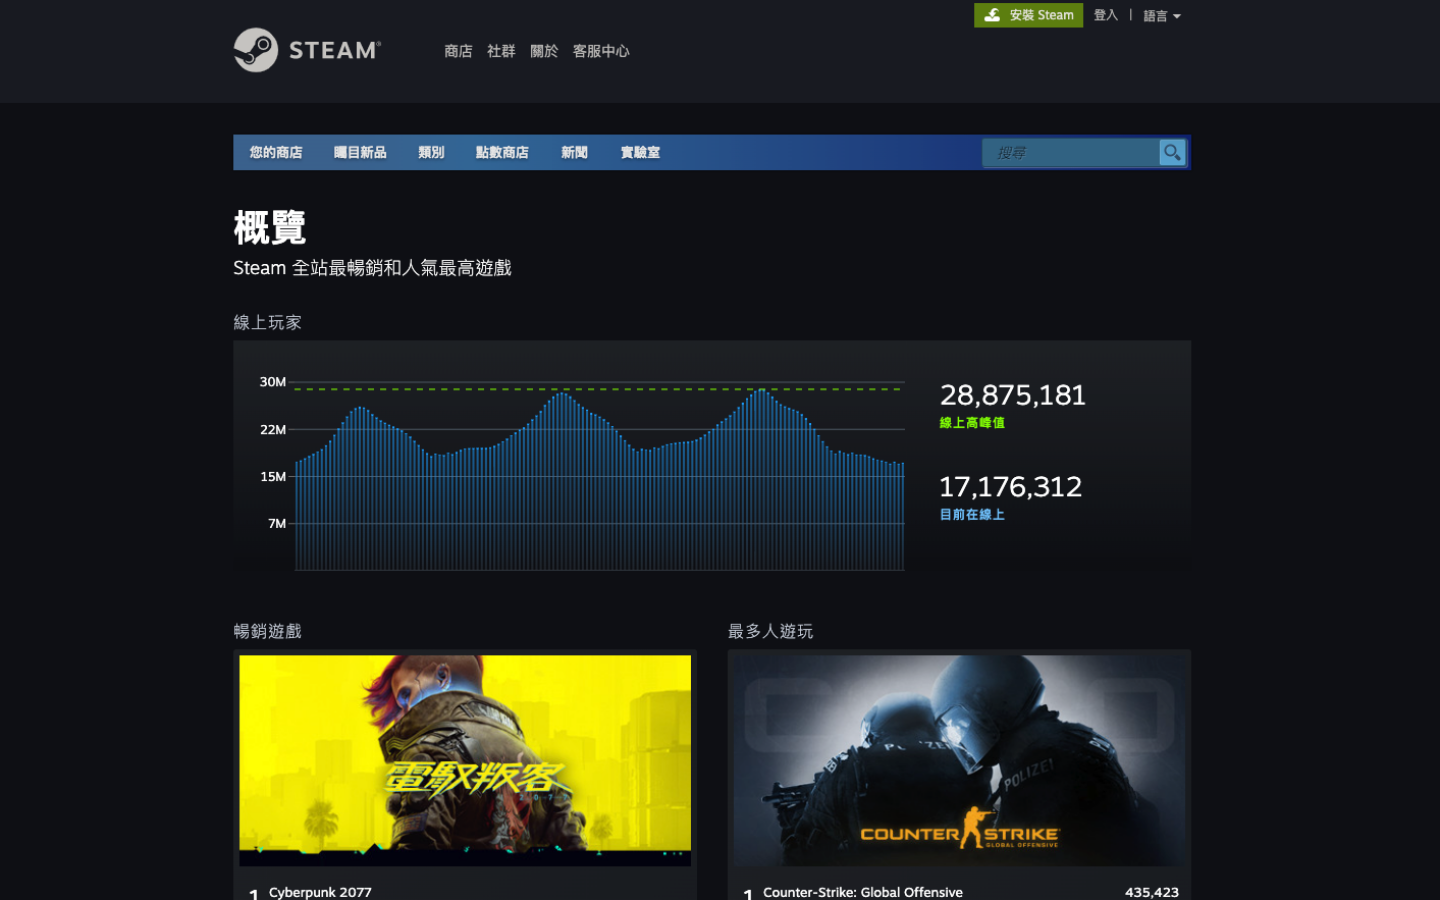 Steam 更新統計資料頁面：全新的熱門遊戲即時榜單與每週榜單